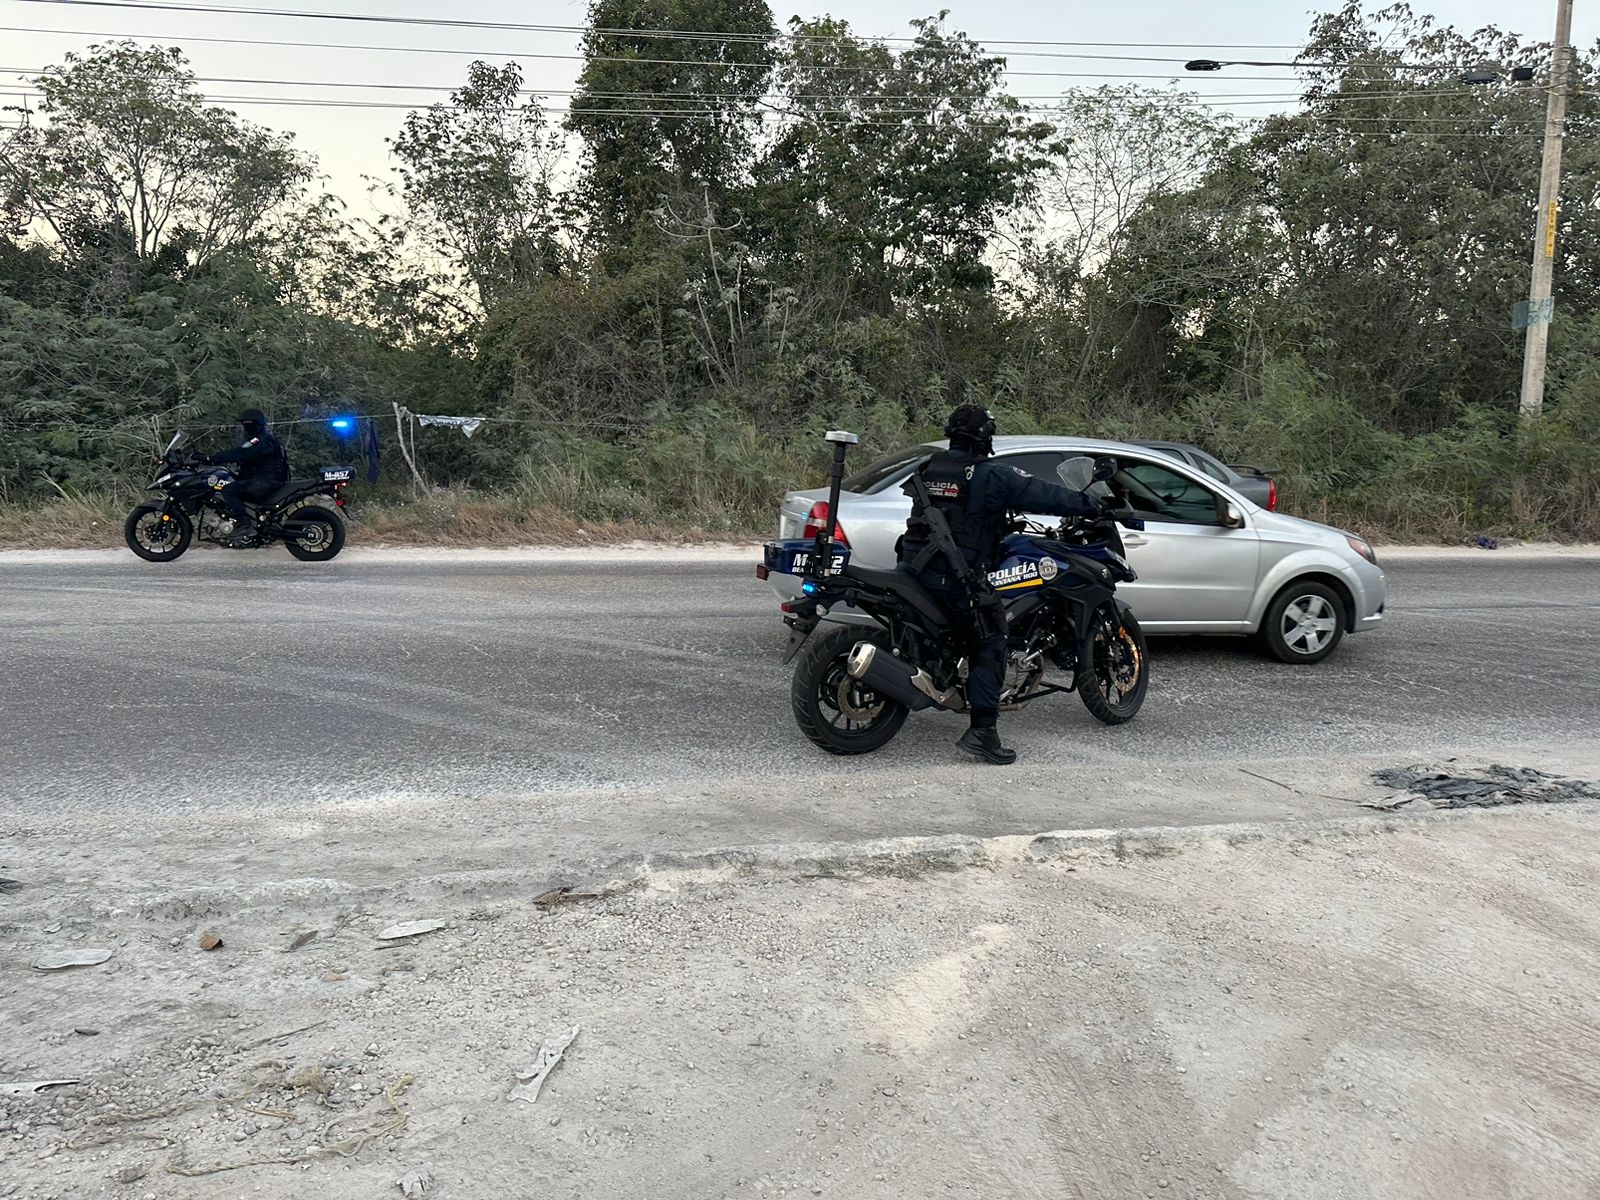 Narcomensaje y una supuesta extremidad moviliza a policías en Cancún